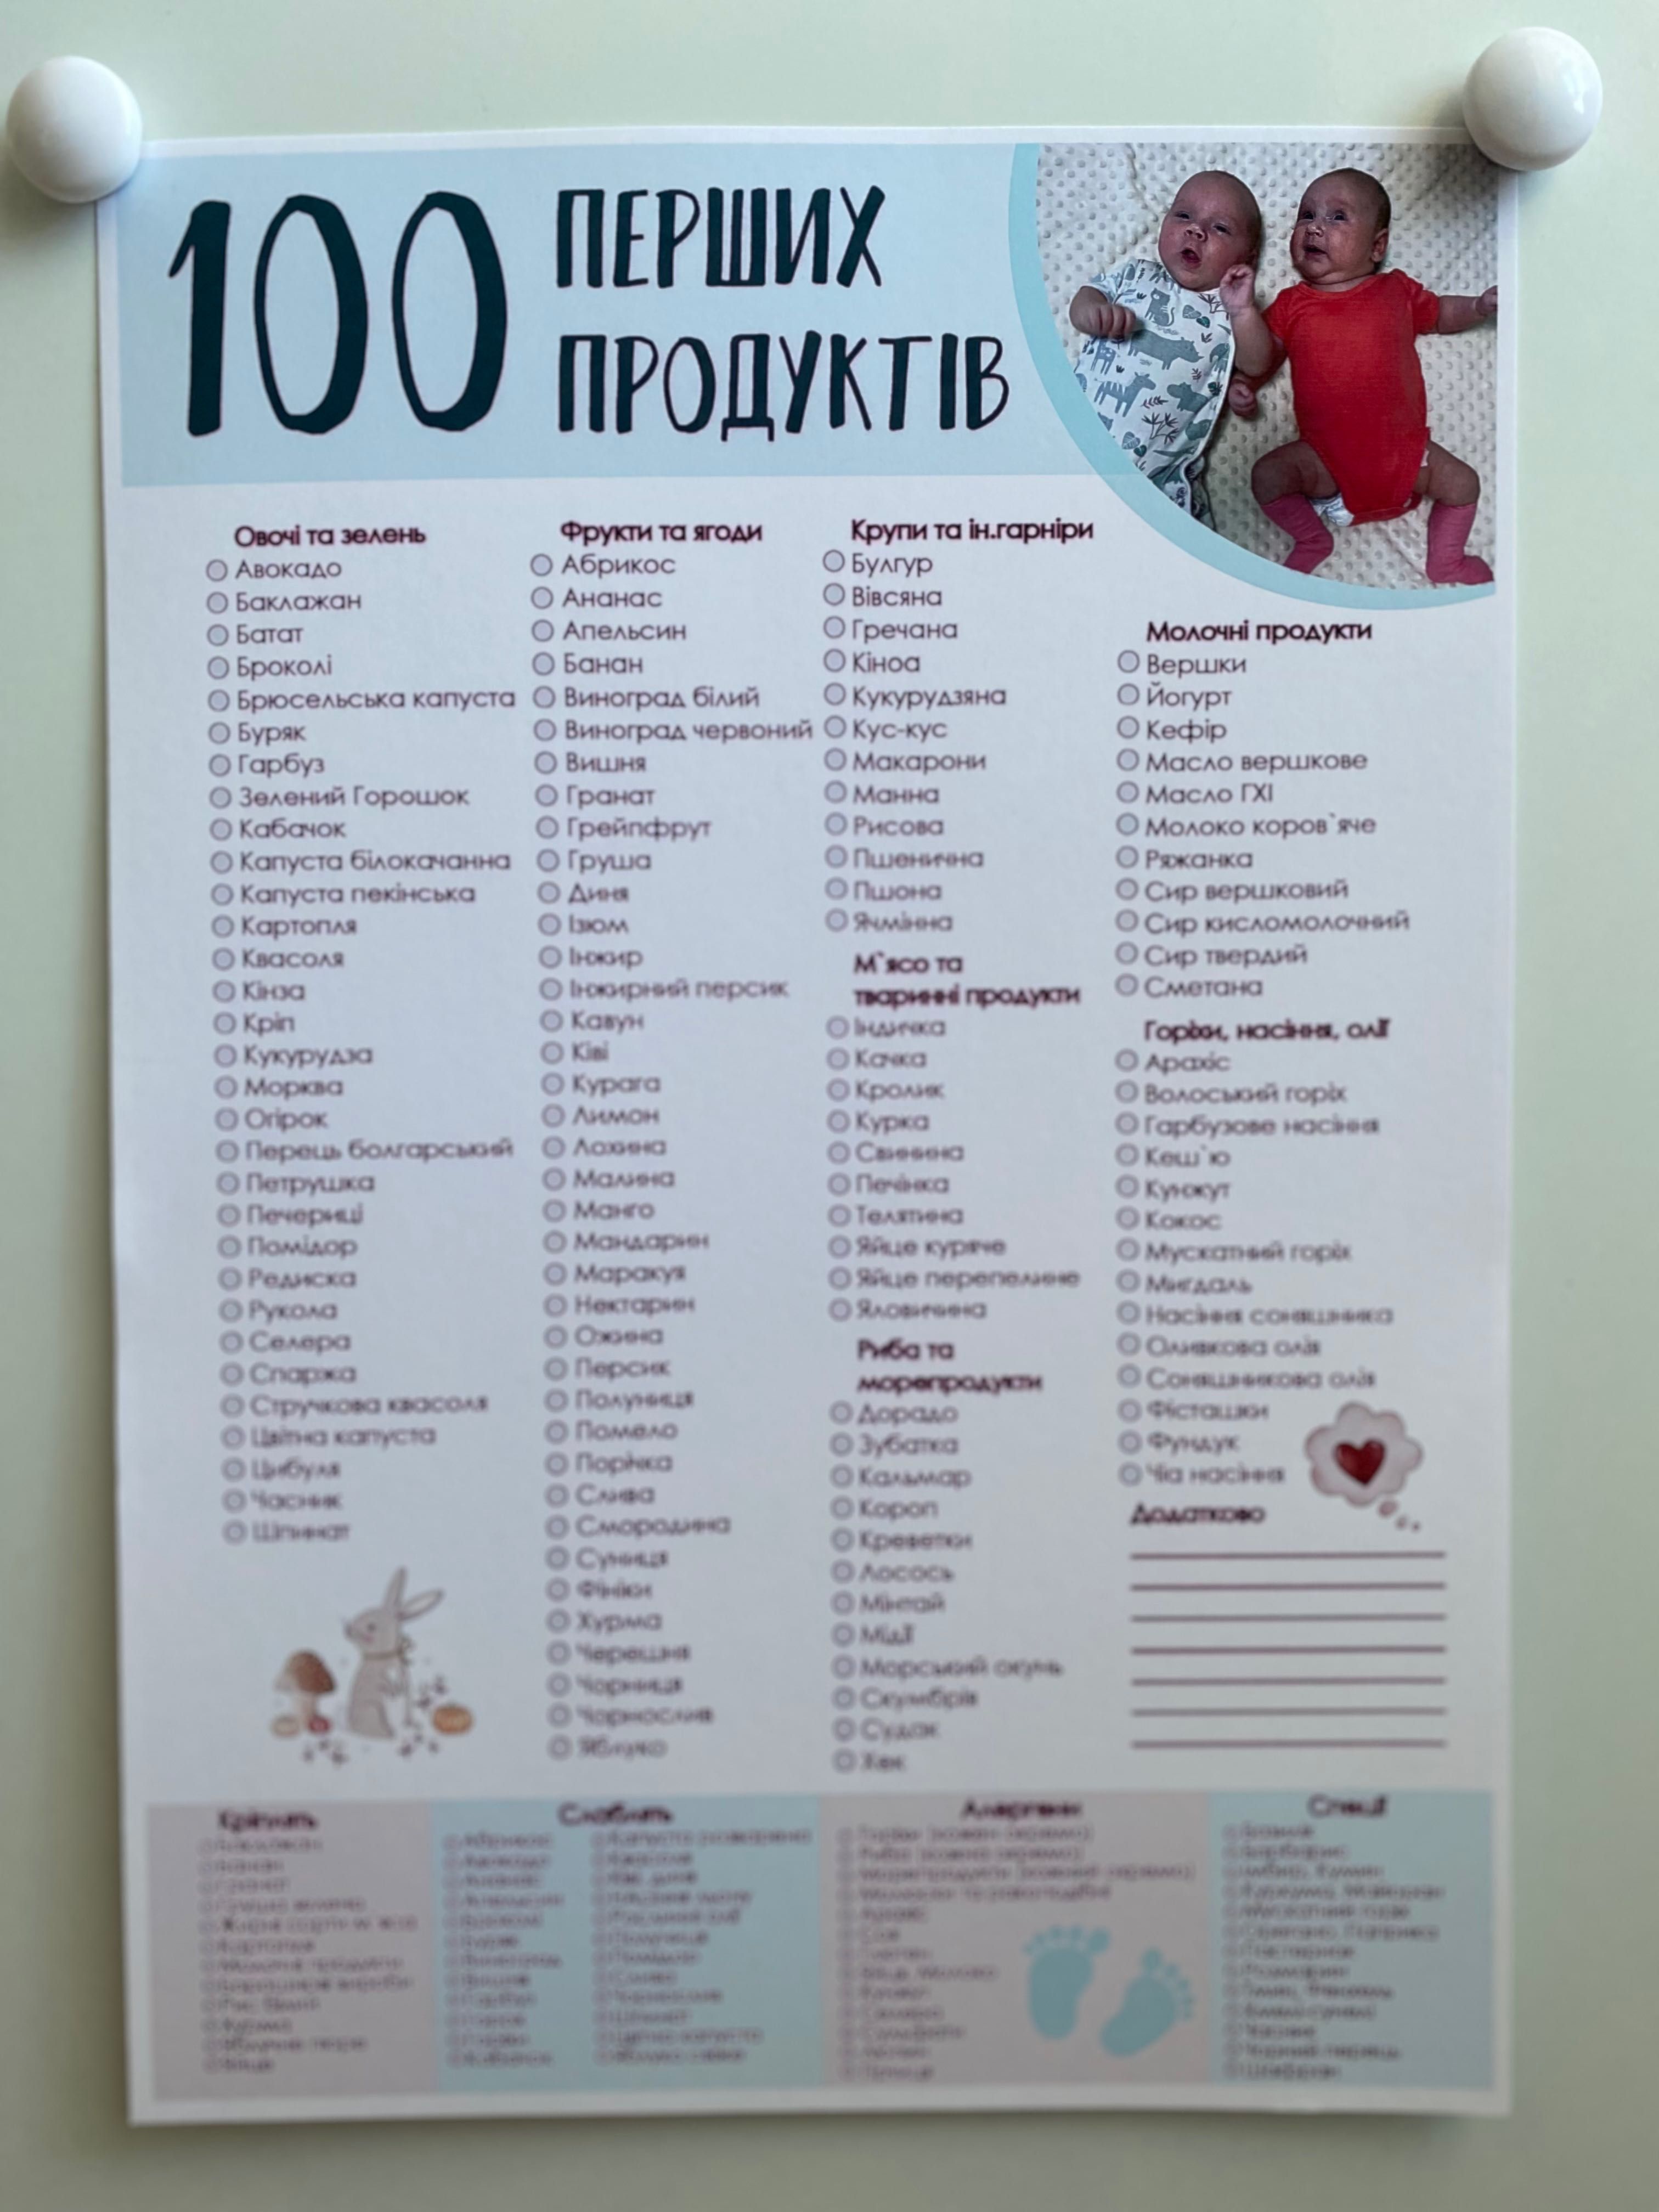 Плакат 100 перших продуктів